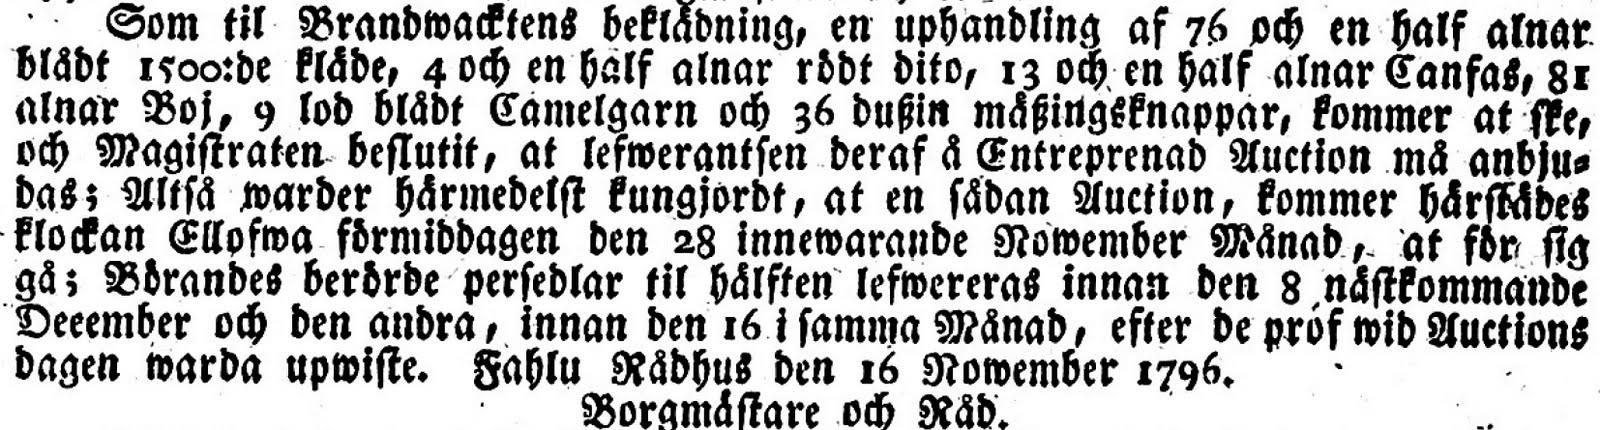 Fahlu weckoblad 1796